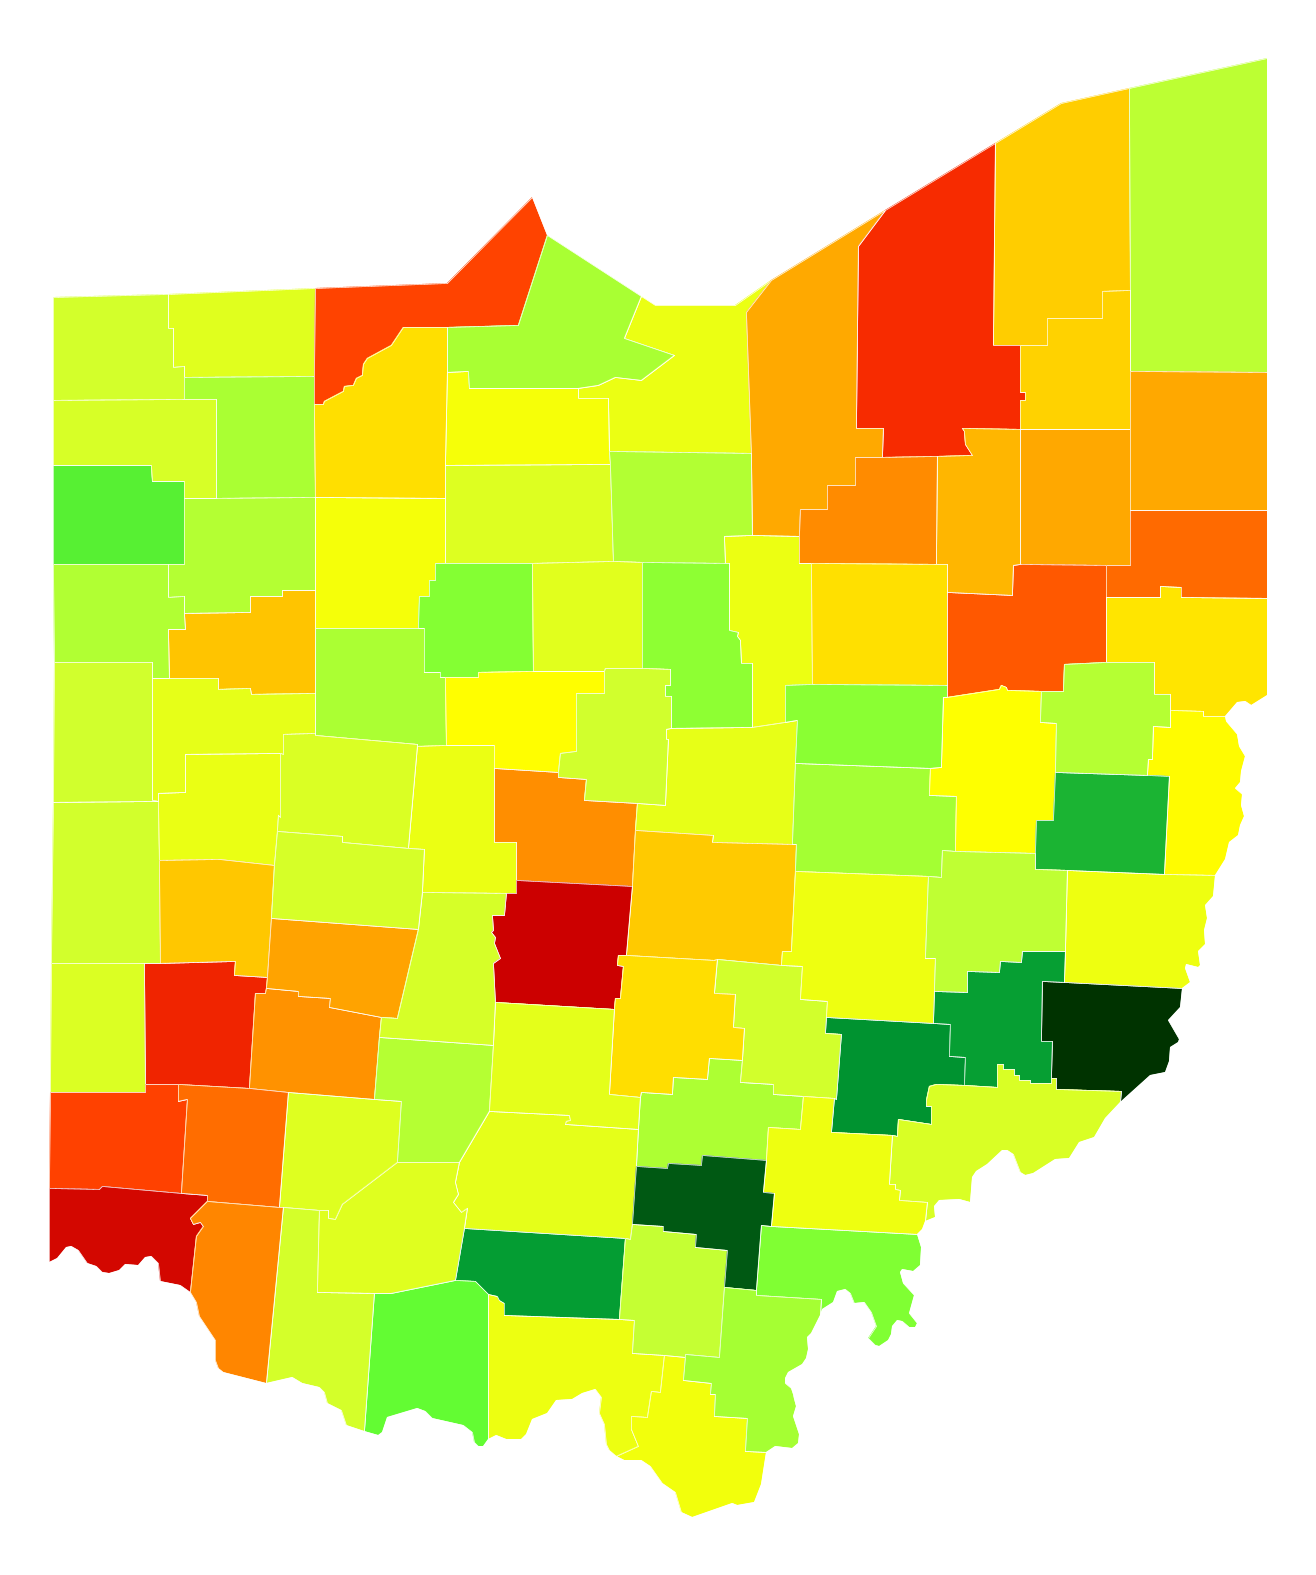 Ohio Population Density Map - Tupper Lake Ny Map